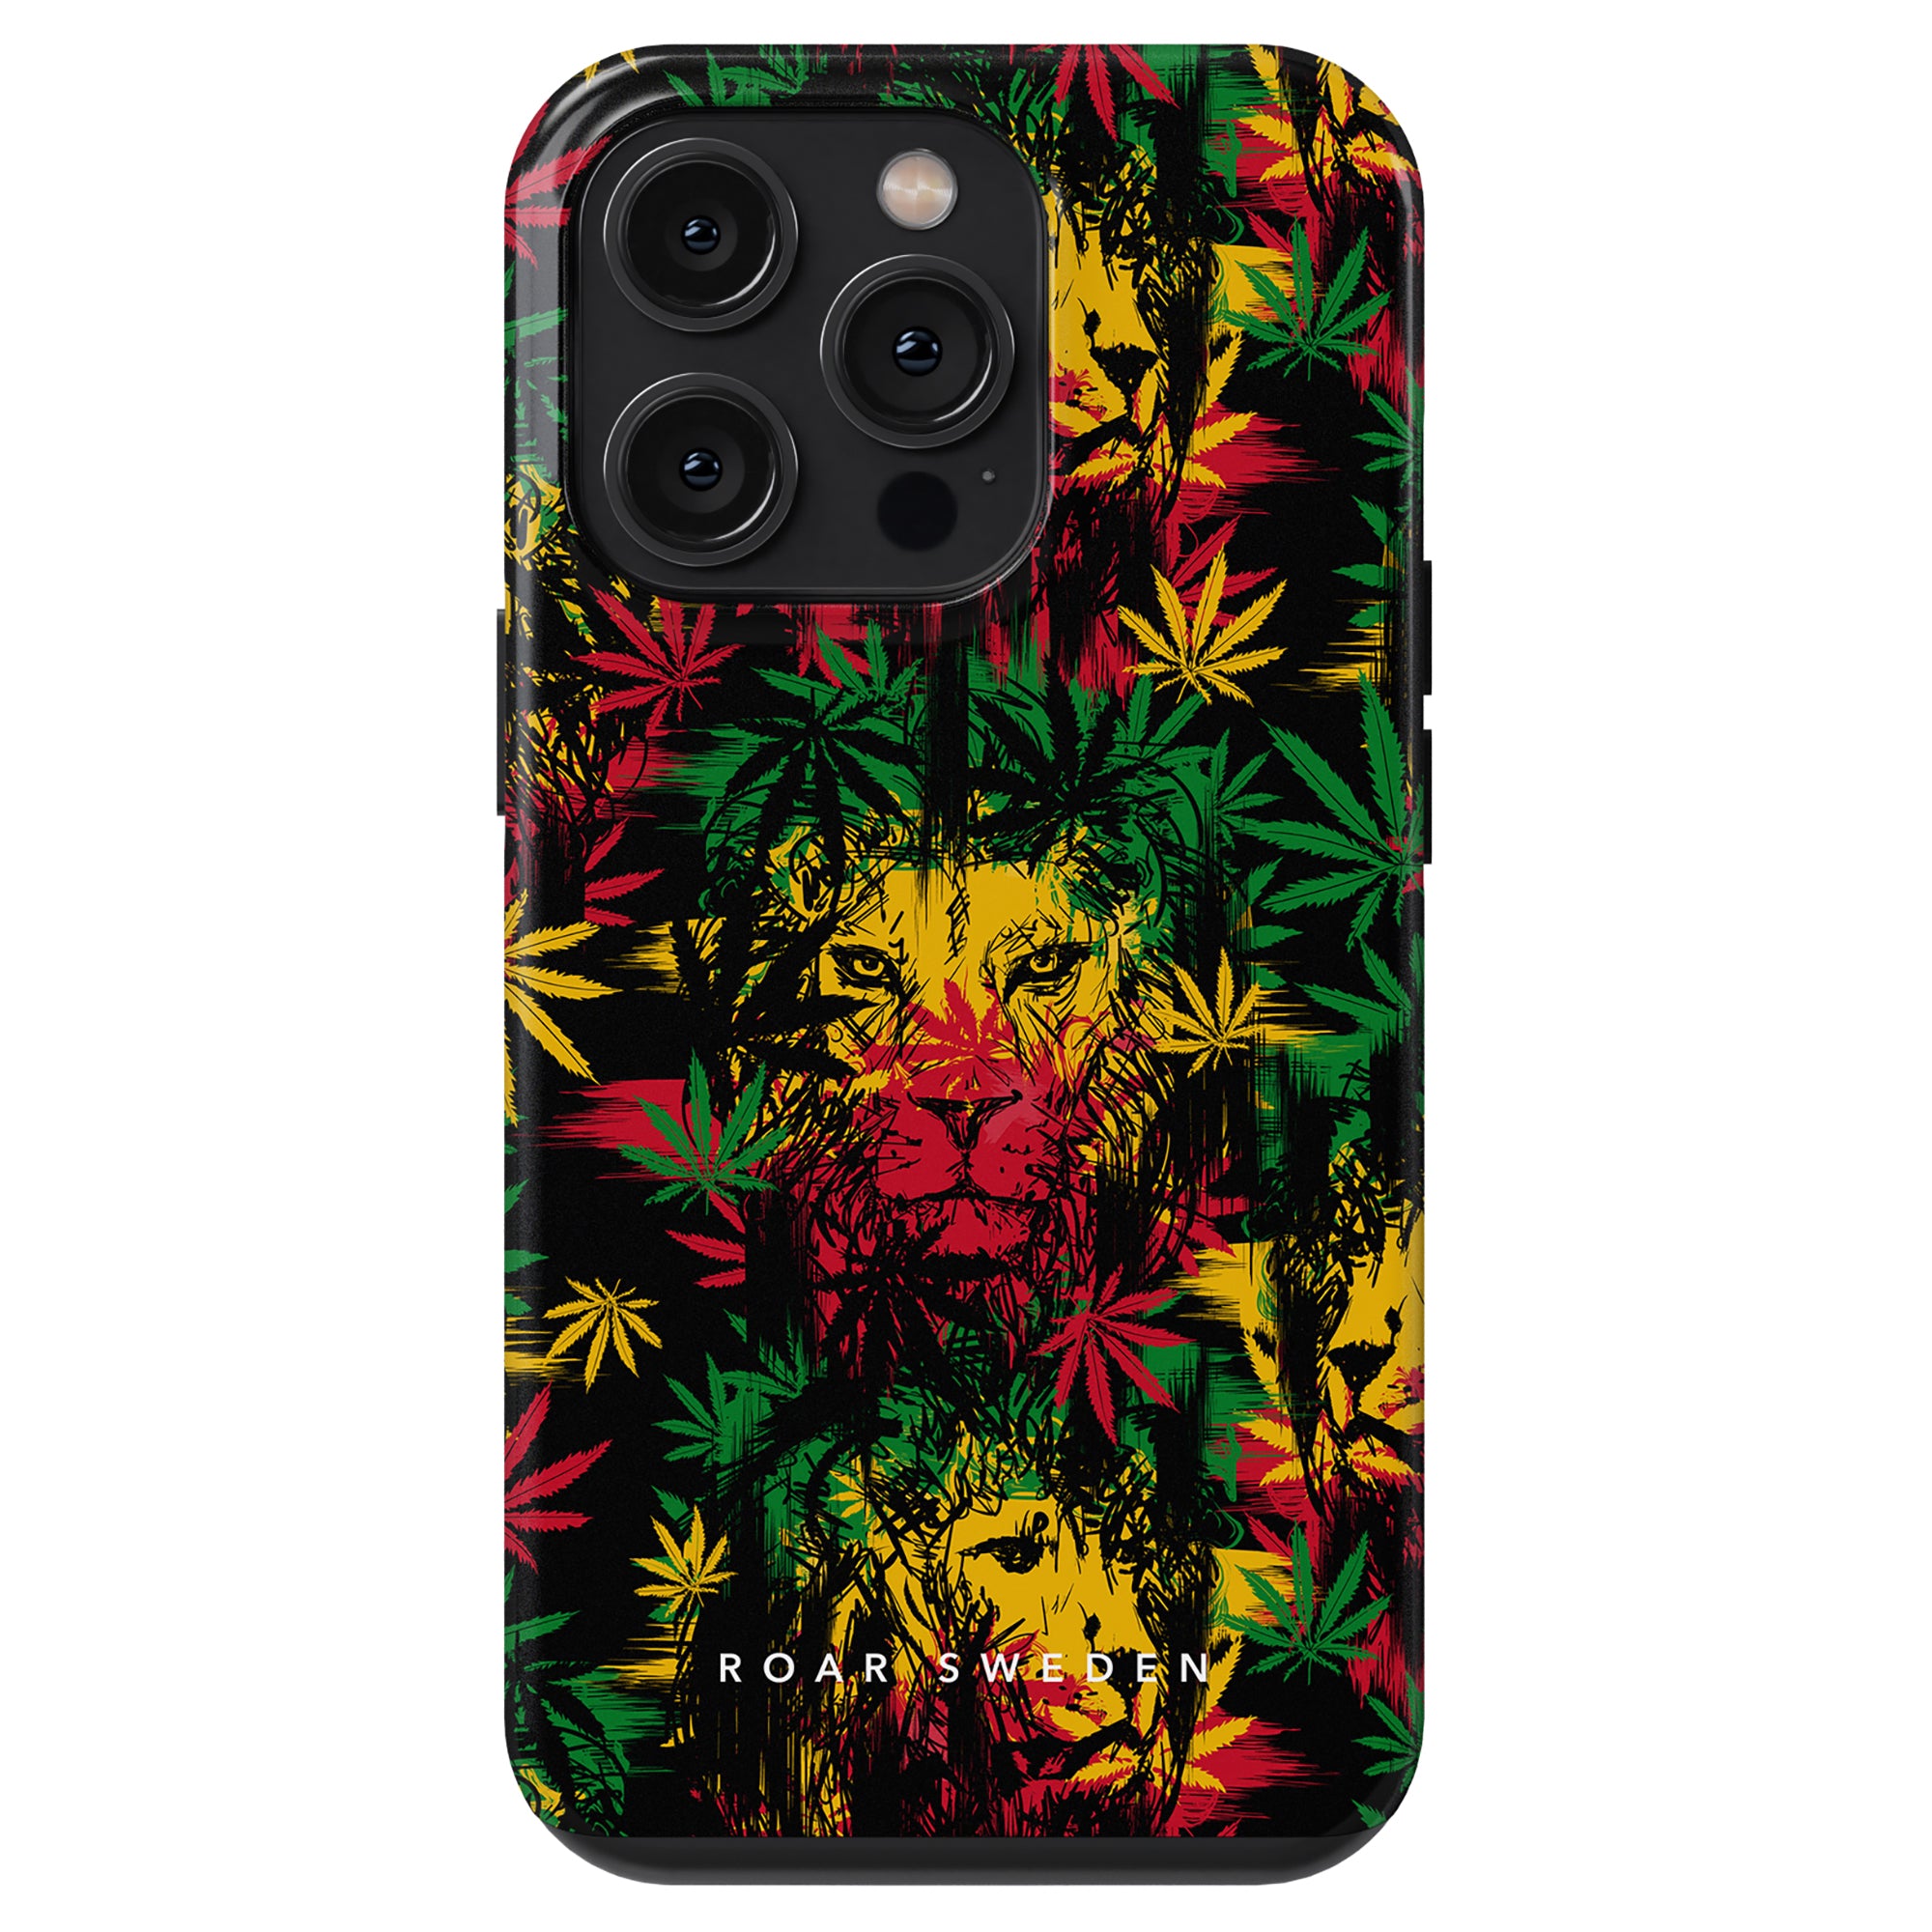 Ett Reggae Lion - Tufft fodral med en lejondesign omgiven av marijuanablad.